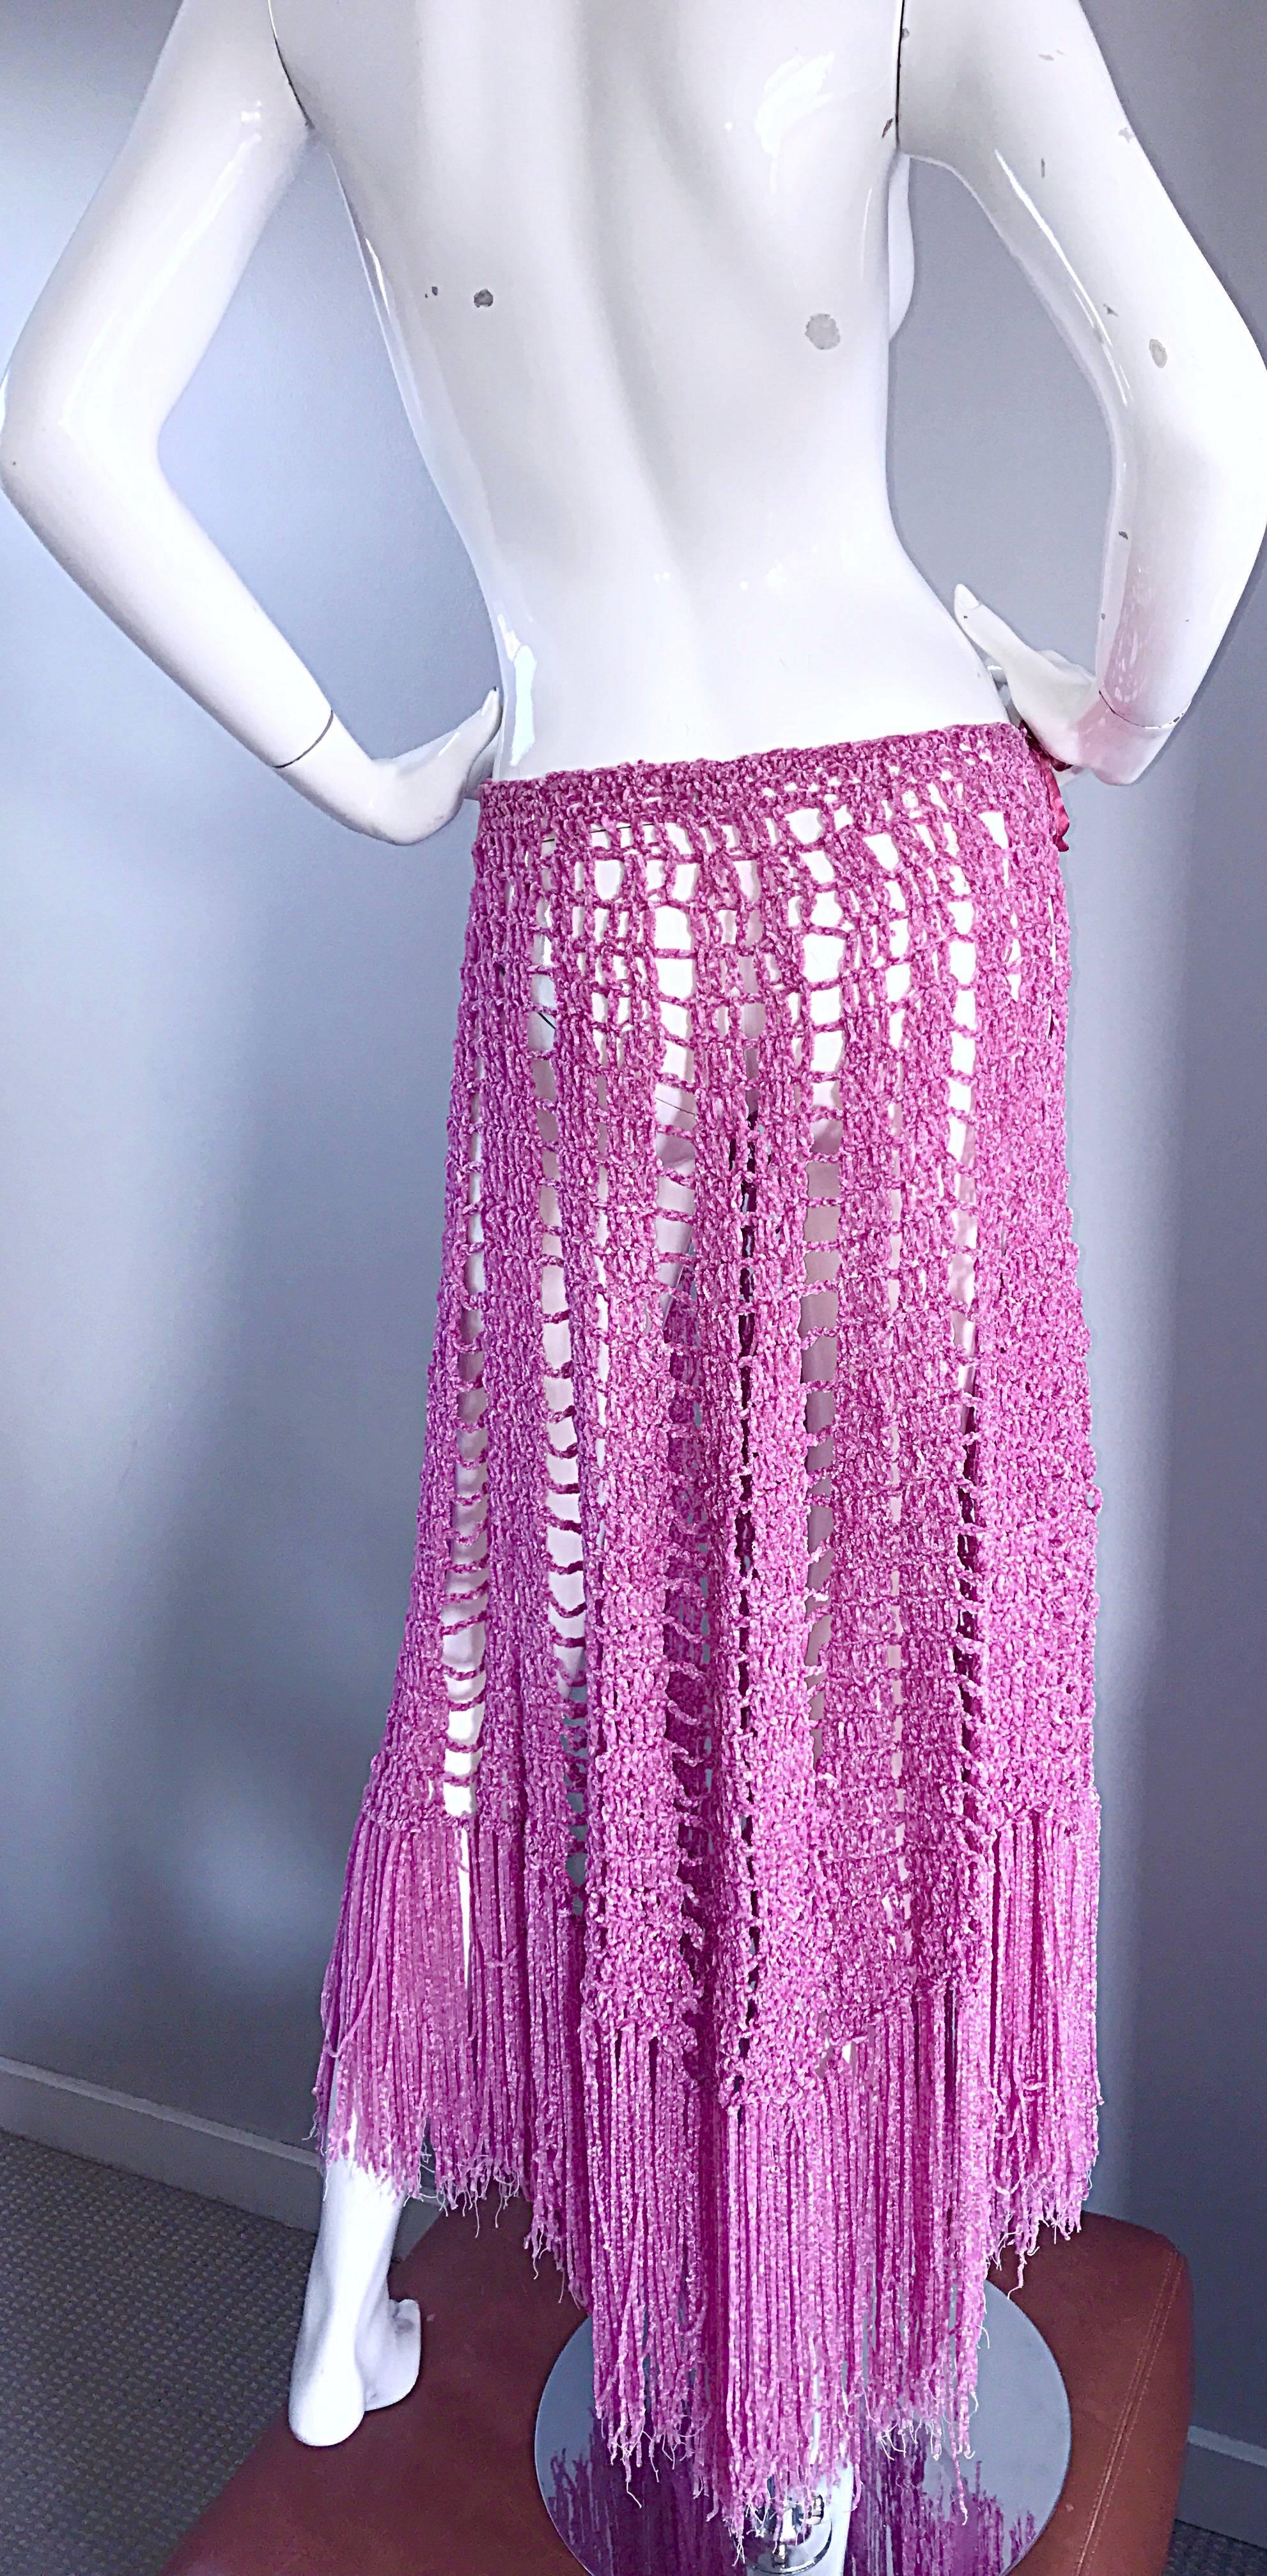 Joseph Magnin 1970s Brand New Pink Vintage Italian Crochet Skirt, Dress or Cape 2